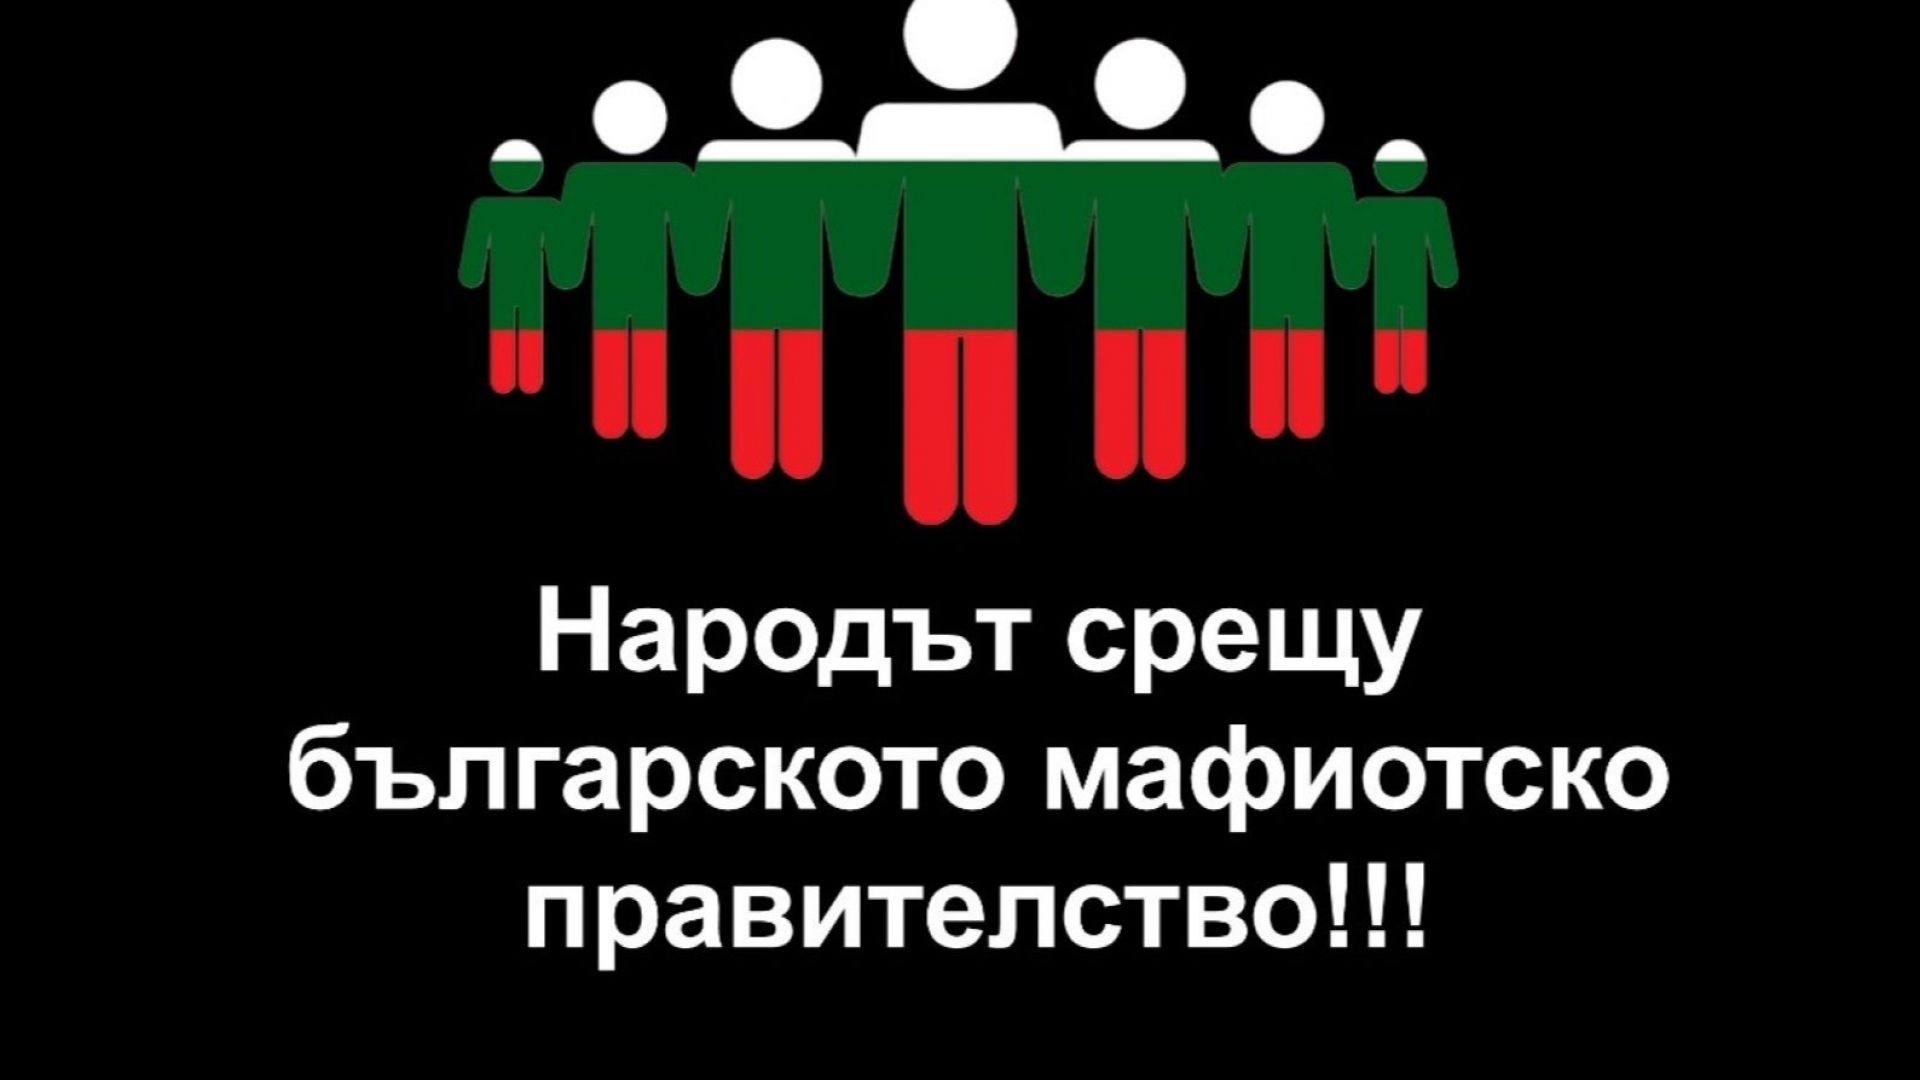 Българи от чужбина на протест в София, искат да свалят Борисов от власт